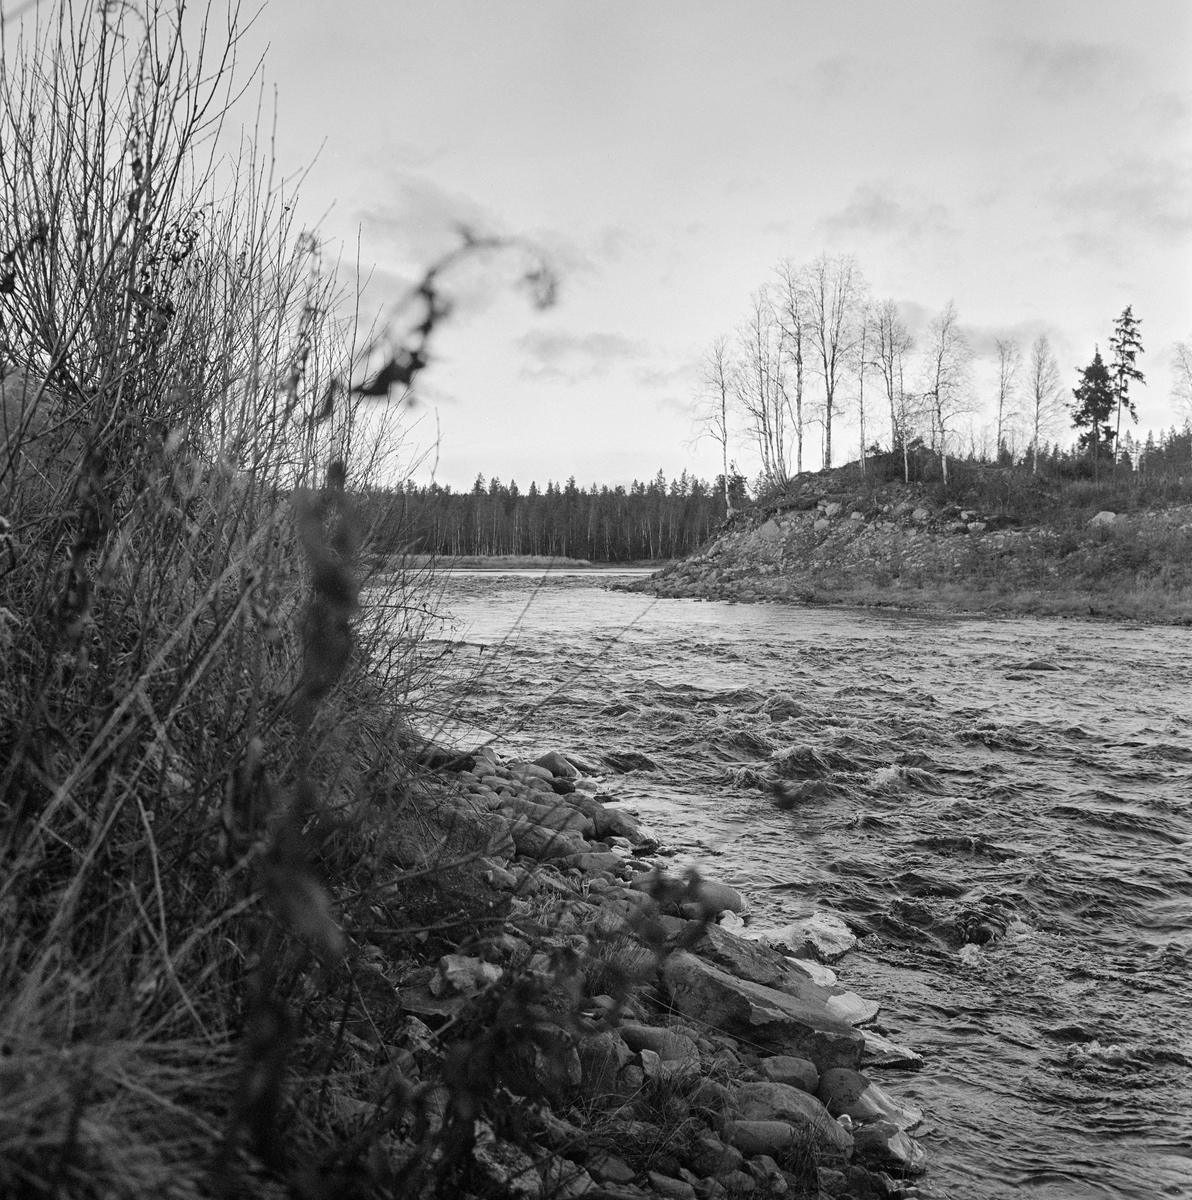 Landskap ved elva Foreninga i Trysil, fotografert høsten 1970. Stedet ligger nedenfor Østre og Vestre Grønas sammeløp (derav navnet Foreninga), men ovenfor det stedet hvor dette vassdraget løper sammen med Tannåa og danner Stor-Grøna. Vannet fra de nevnte elvene renner etter hvert renner ut i Trysilelva/Klara, som flyter videre inn i Sverige og munner ut ved Karlstad, der det lenge har vært mye skogindustri. Mye av råstoffet kom fra Trysil, og det vassdraget dette fotografiet er tatt ved var lenge ei viktig transportåre for tømmeret. For å gjøre fløtinga effektiv hadde fløterne behov for å bygge regulerbare vannreservoarer. Den første dammen i dette området skal ha vært bygd i 1885, i nærheten av det stedet der dette bildet er tatt. Dette skal ha skjedd etter langvarige diskusjoner mellom ledelsen i selskapet Mölnbacka Trysil, som var opptatt av å heve vannspeilet for å lette fløtinga, og lokale gardbrukere, som nødig ville at utslåttene deres skulle settes under vann i vårsesongen, noe som ville hemme grasveksten. Den gamle Kvannstranddammens betydning for reguleringa av fløtingsvannføringa avtok etter at Grønenes fellesfløtningsforening fikk bygd Kaldflodammen i Vestre Grøna og Stornesdammen i Østre Grøna. Koia damvokterne ved Kvannstranddammen hadde bodd i mistet dermed sine viktigste funksjoner, men den ble stående inntil Trygve Aasheim i 1970 foreslo å flytte den til Norsk Skogbruksmuseum i Elverum. Dette fotografiet ble tatt under den befaringa dette forslaget utløste. Koia ble demontert samme høst og gjenoppført på museet påfølgende vår og sommer (jfr. SJF-B.0026). På det stedet der dette fotografiet ble tatt ble det seinere, i 1978, bygd en ny fløtingsdam av betong, stål og tre (jfr. SJF-F.012418).